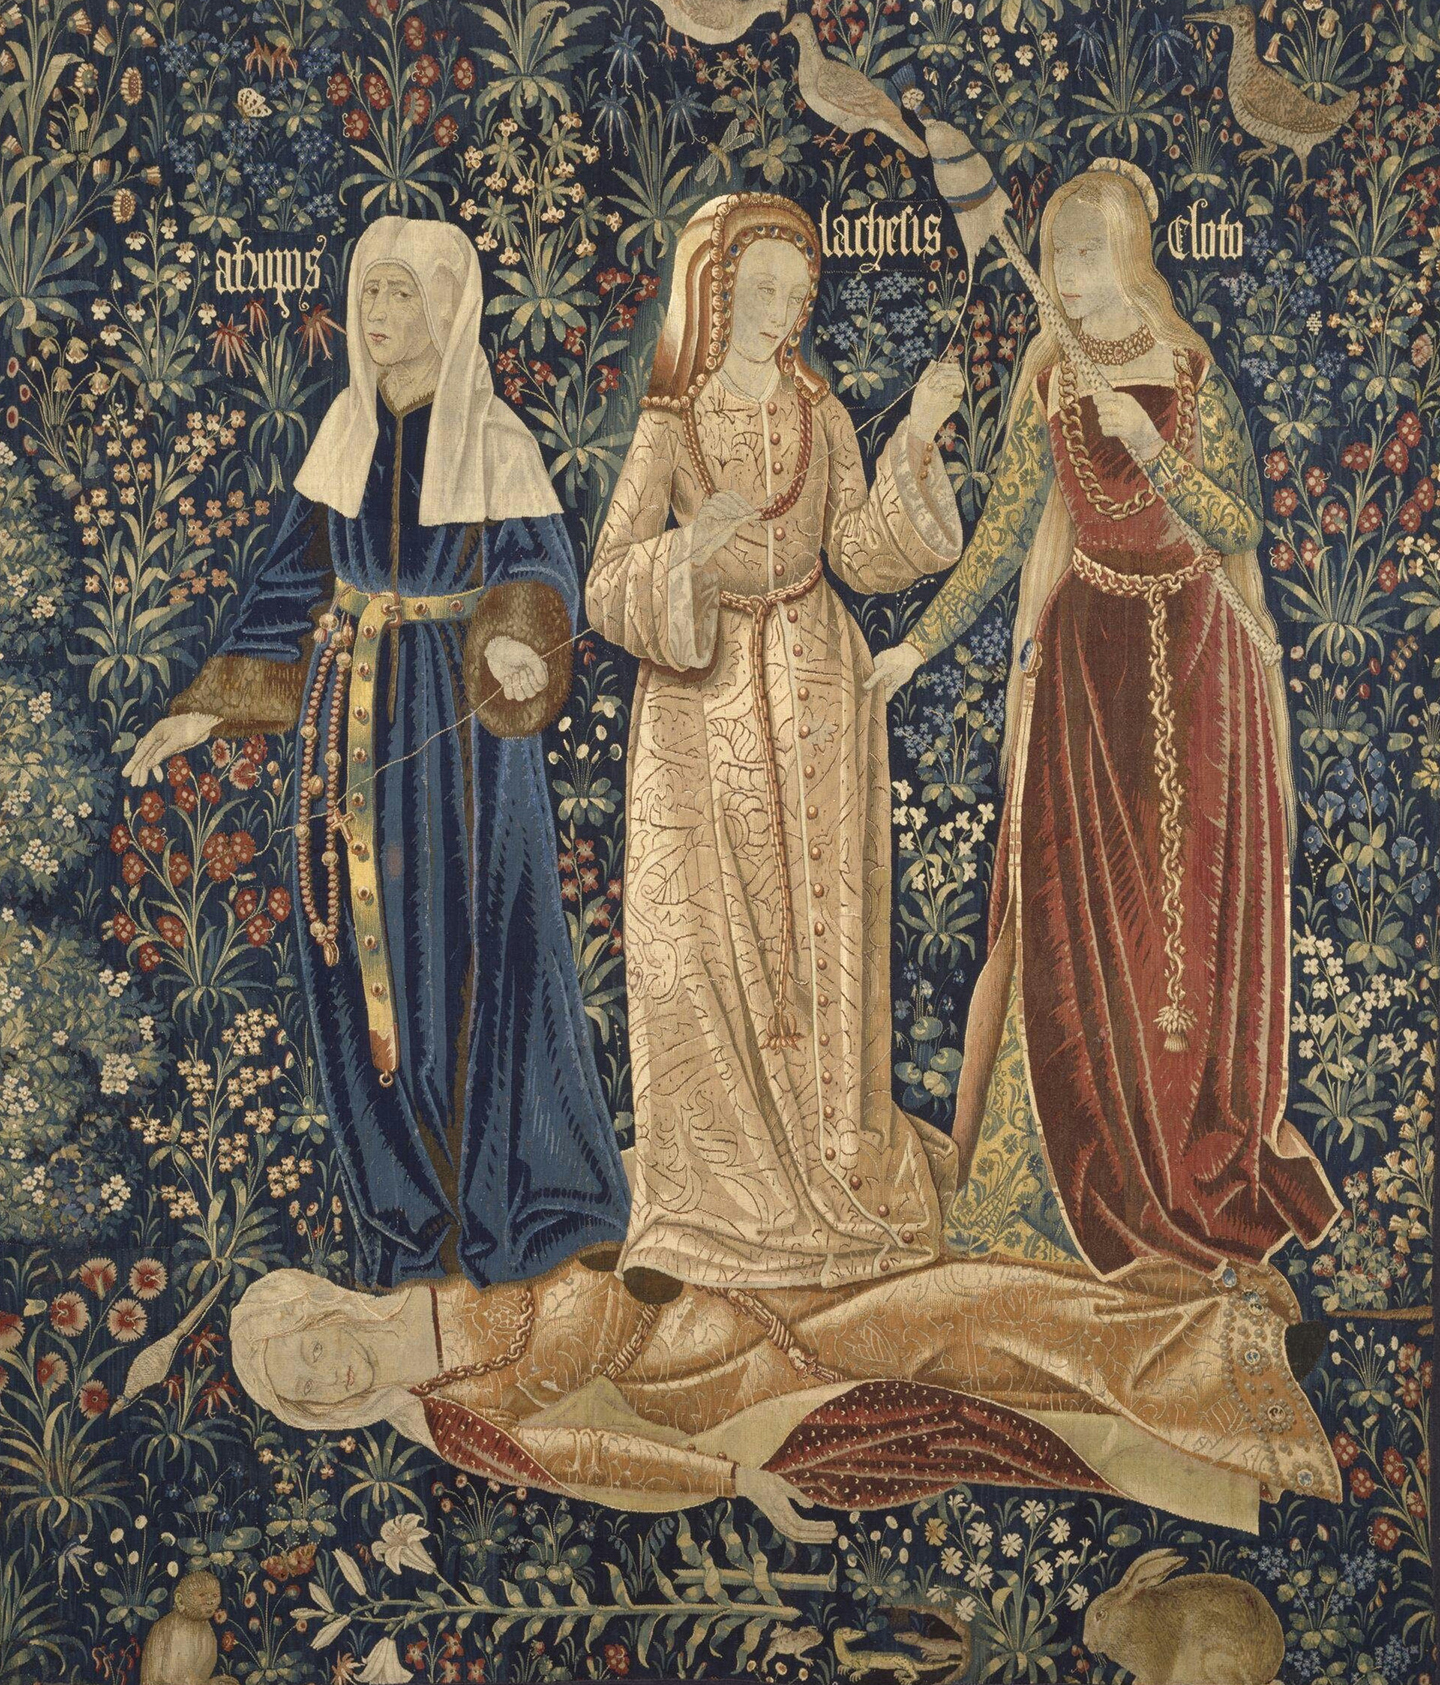 Ba nữ Thần Số mệnh (Clotho, Lachesis, và Atropos), những người quay, kéo, và cắt sợi chỉ sự sống, tượng trưng cho cái chết trên tấm thảm “The Three Fates” (Ba Vị Thần Số Mệnh), đầu thế kỷ 16, của những nghệ nhân dệt thảm người Flemish. Bảo tàng Victoria và Albert, London. (Ảnh: Tư liệu công cộng)